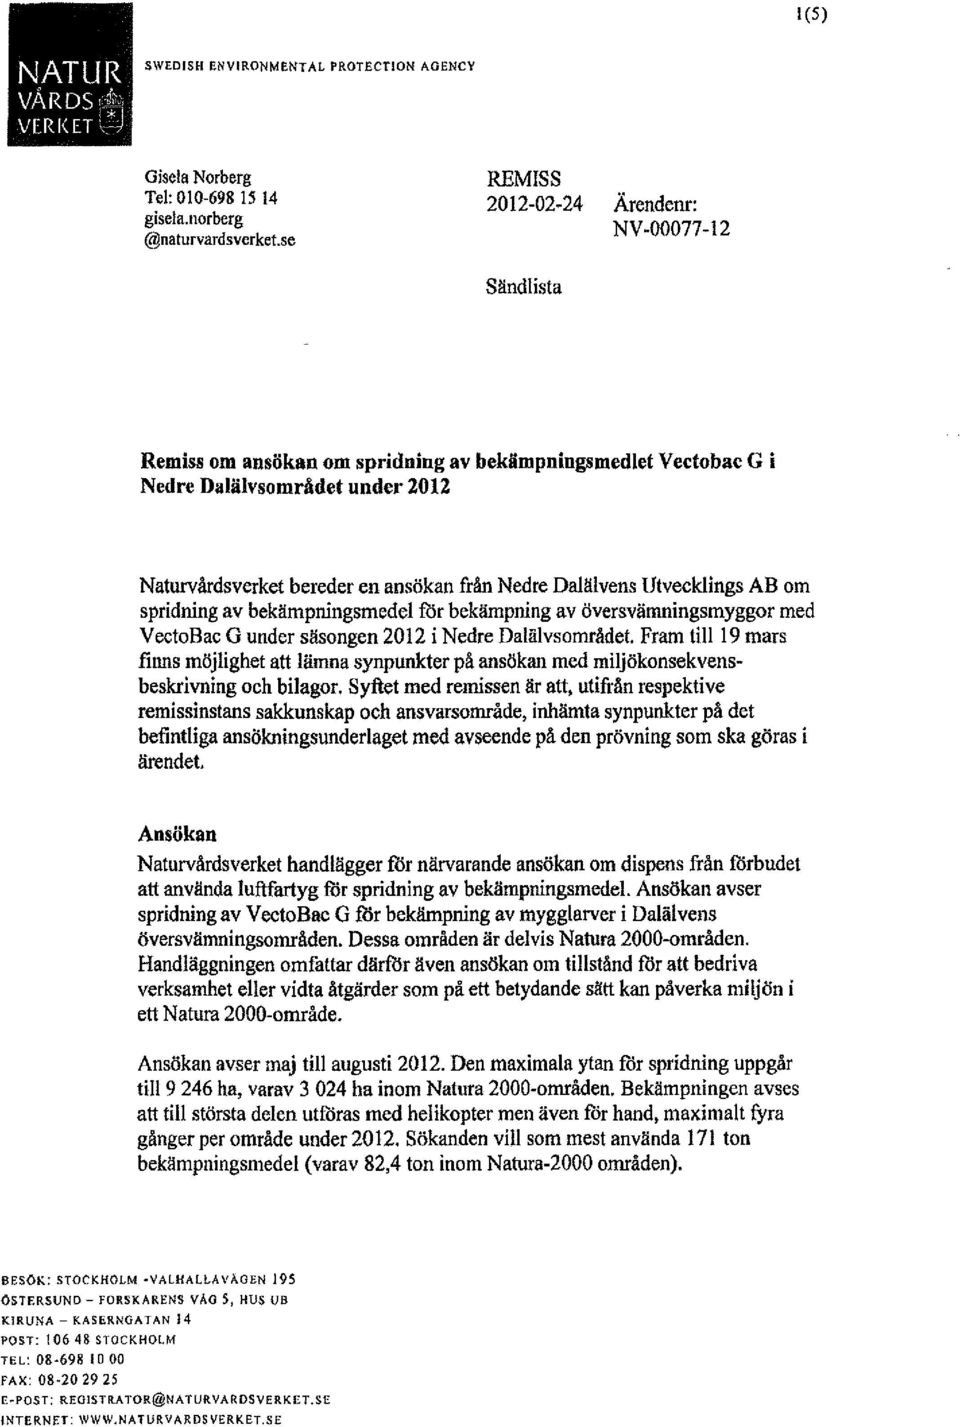 Dalälvens Utvecklings AB om spridning av bekämpningsmedel för bekämpning av översvämningsmyggor med VectoBac G under säsongen 2012 i Nedre Dalälvsområdet.